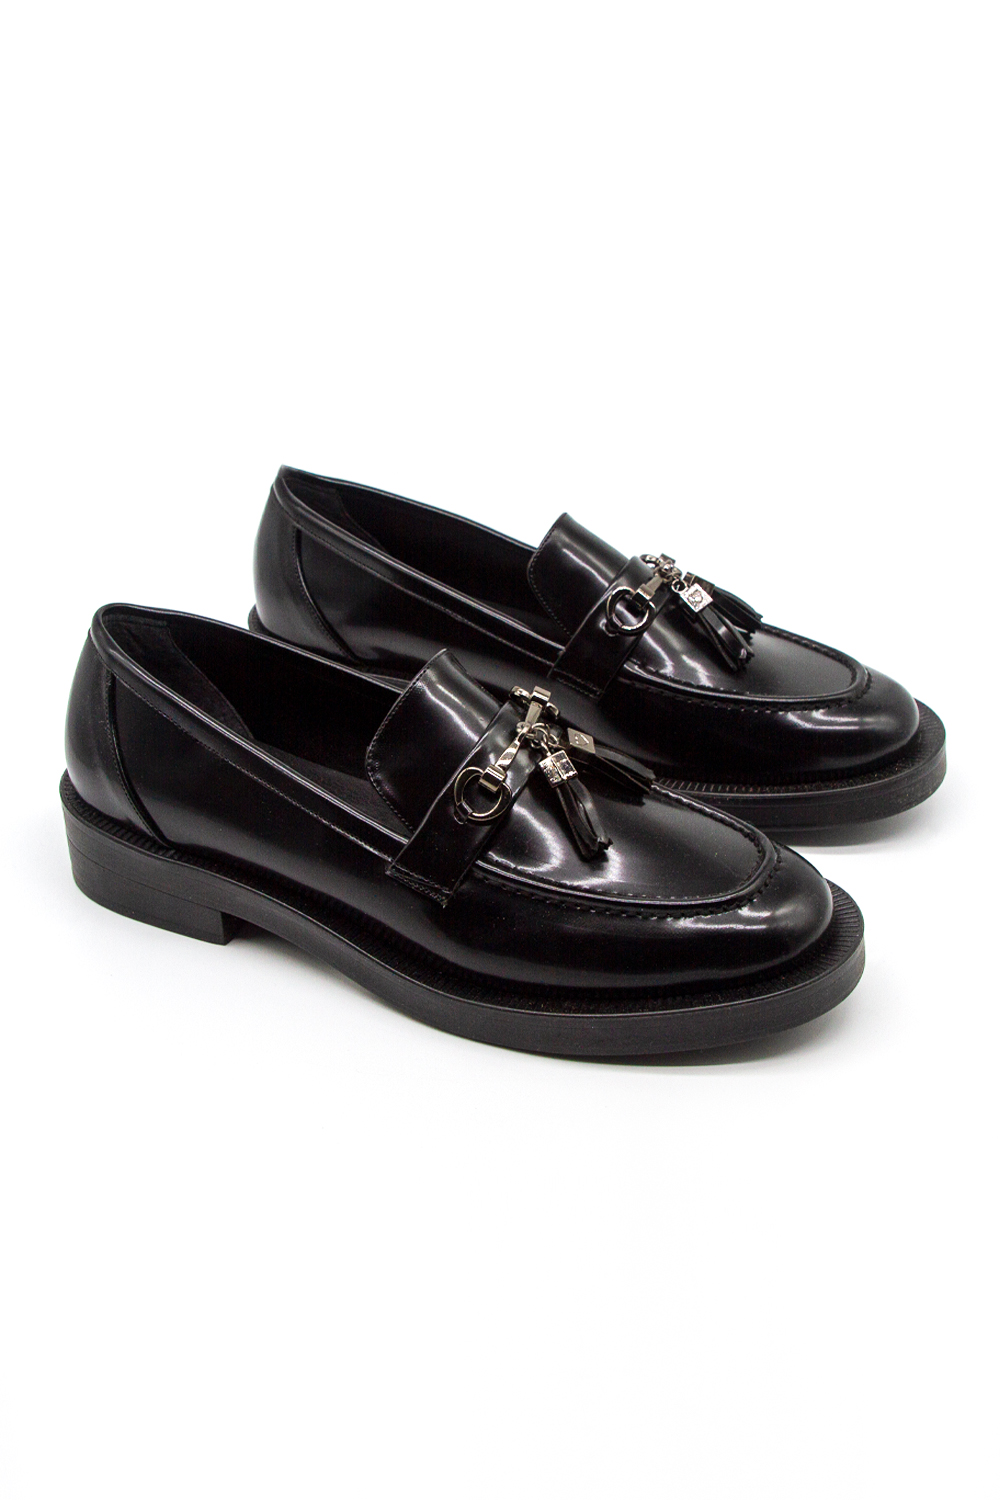 Makosen Rugan Siyah Ayakkabı